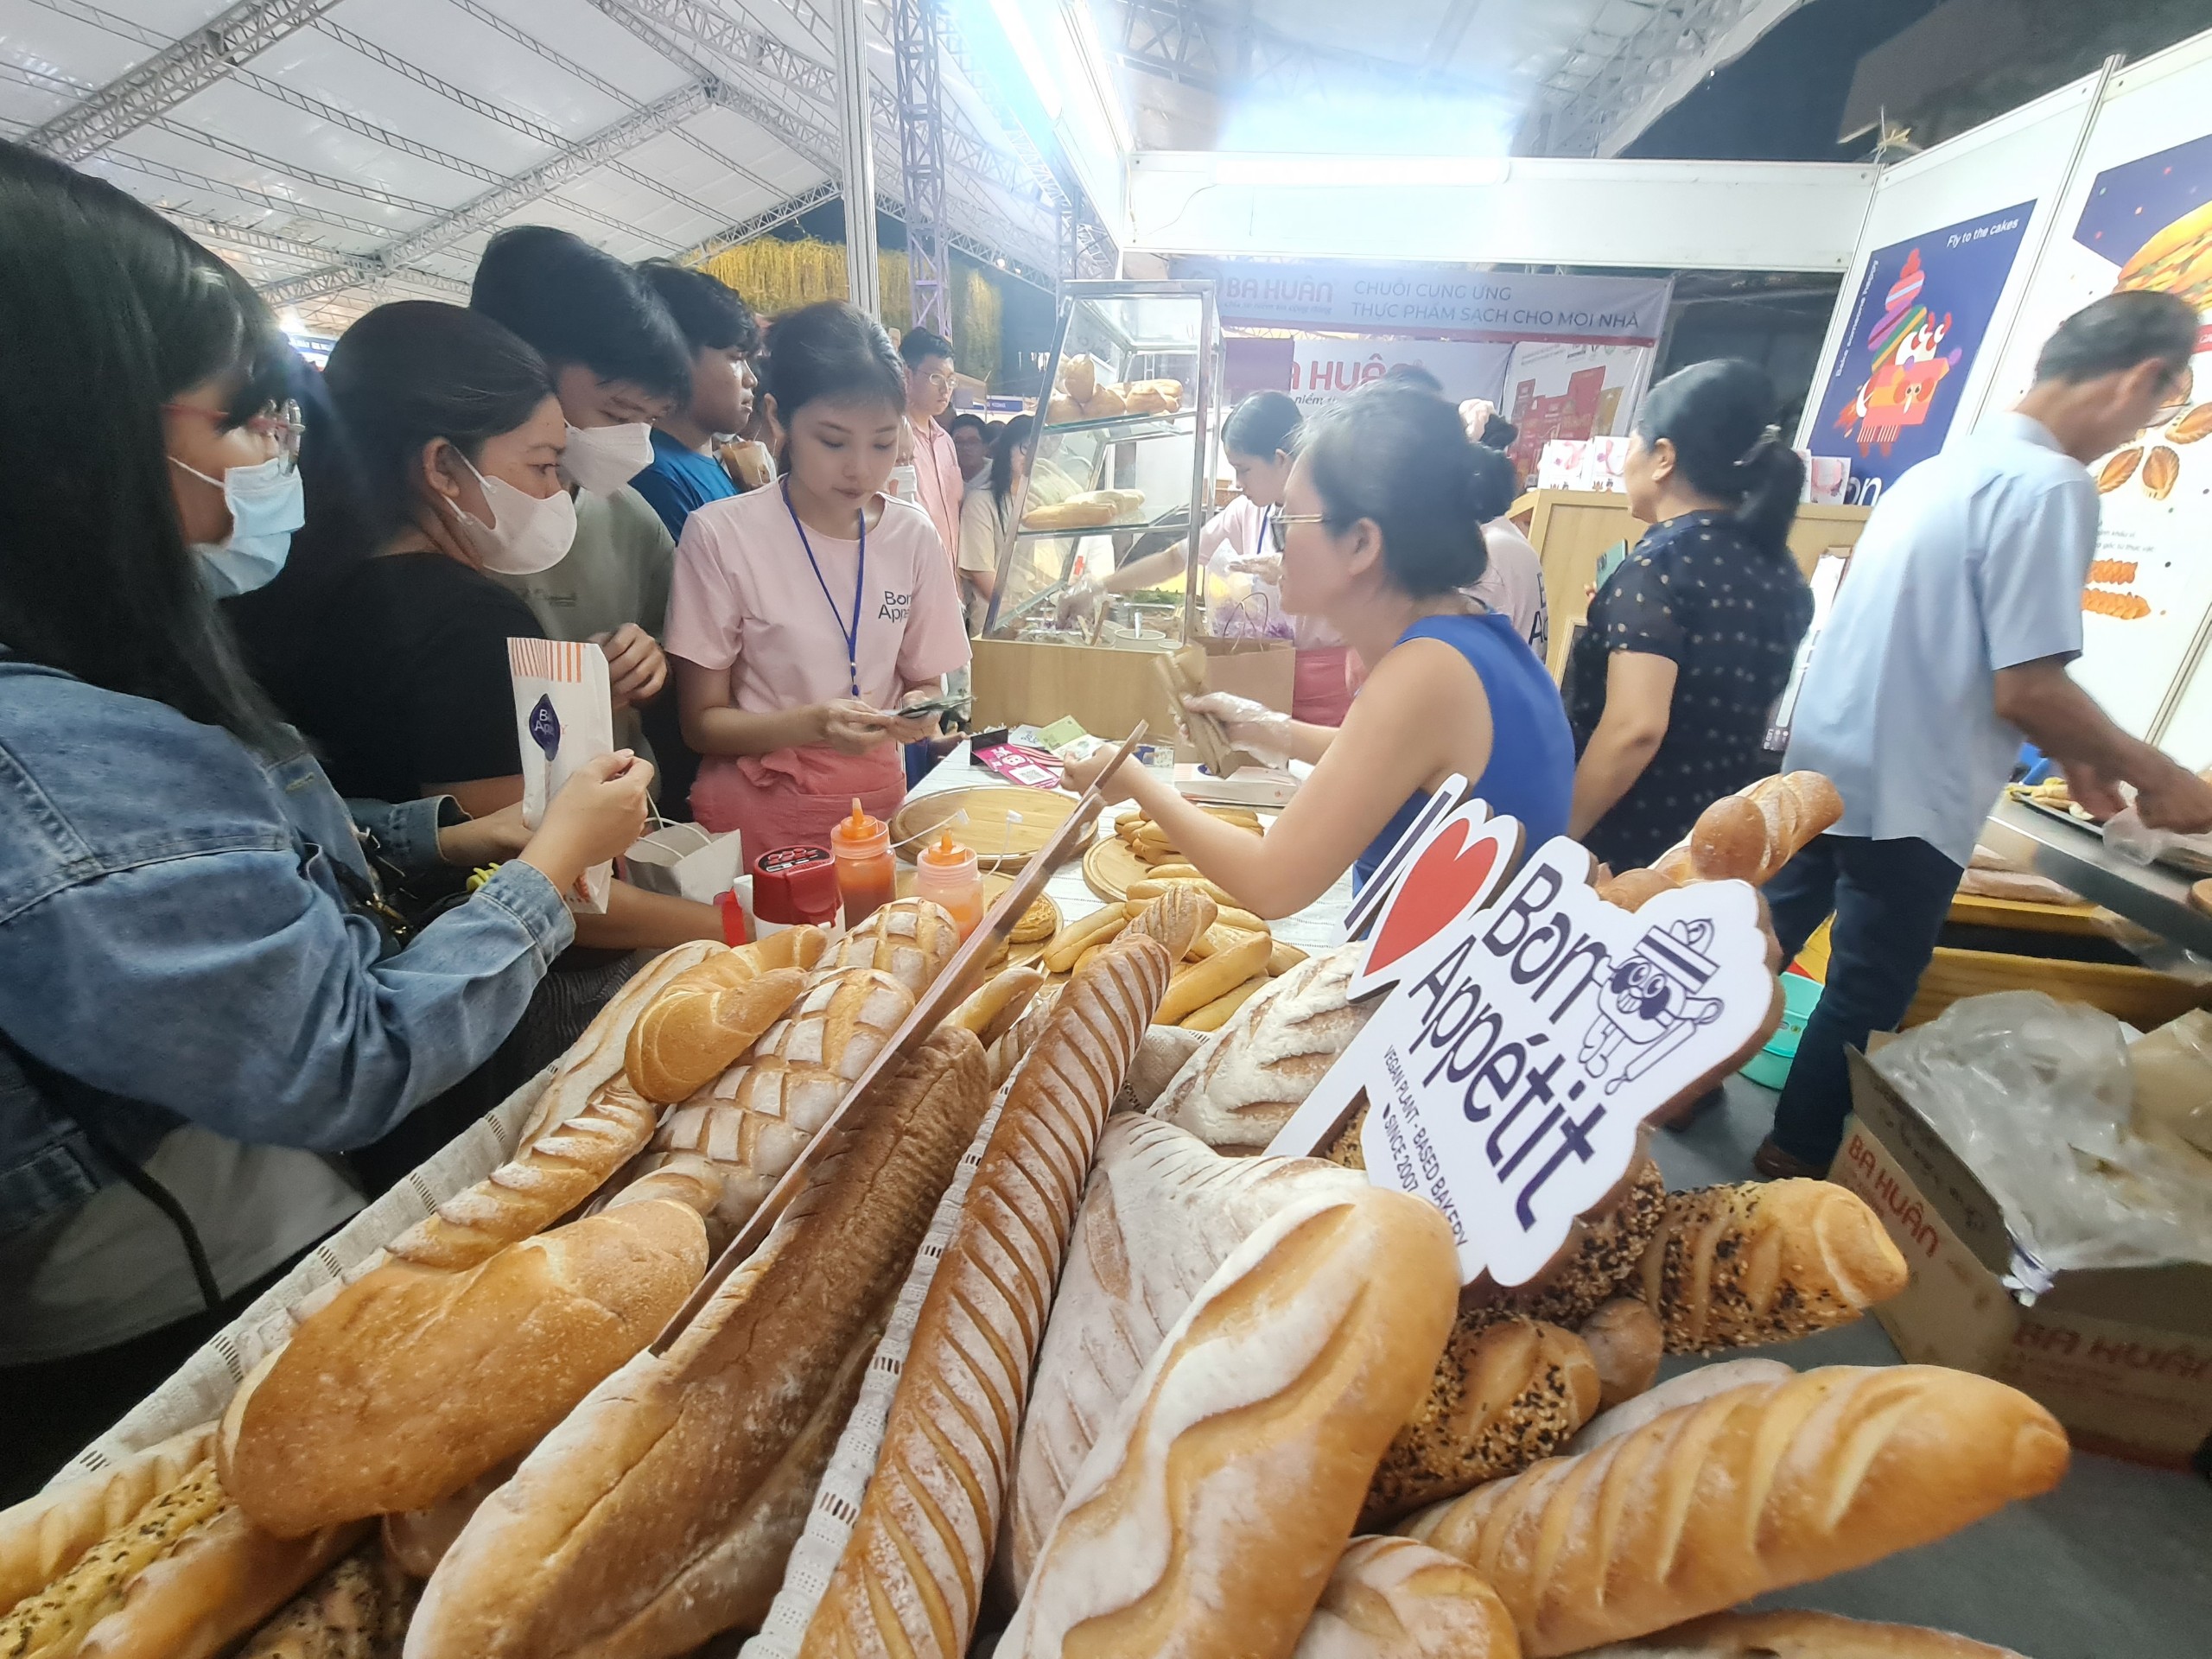 Lý do bánh mì Việt Nam có sức hấp dẫn đến lạ